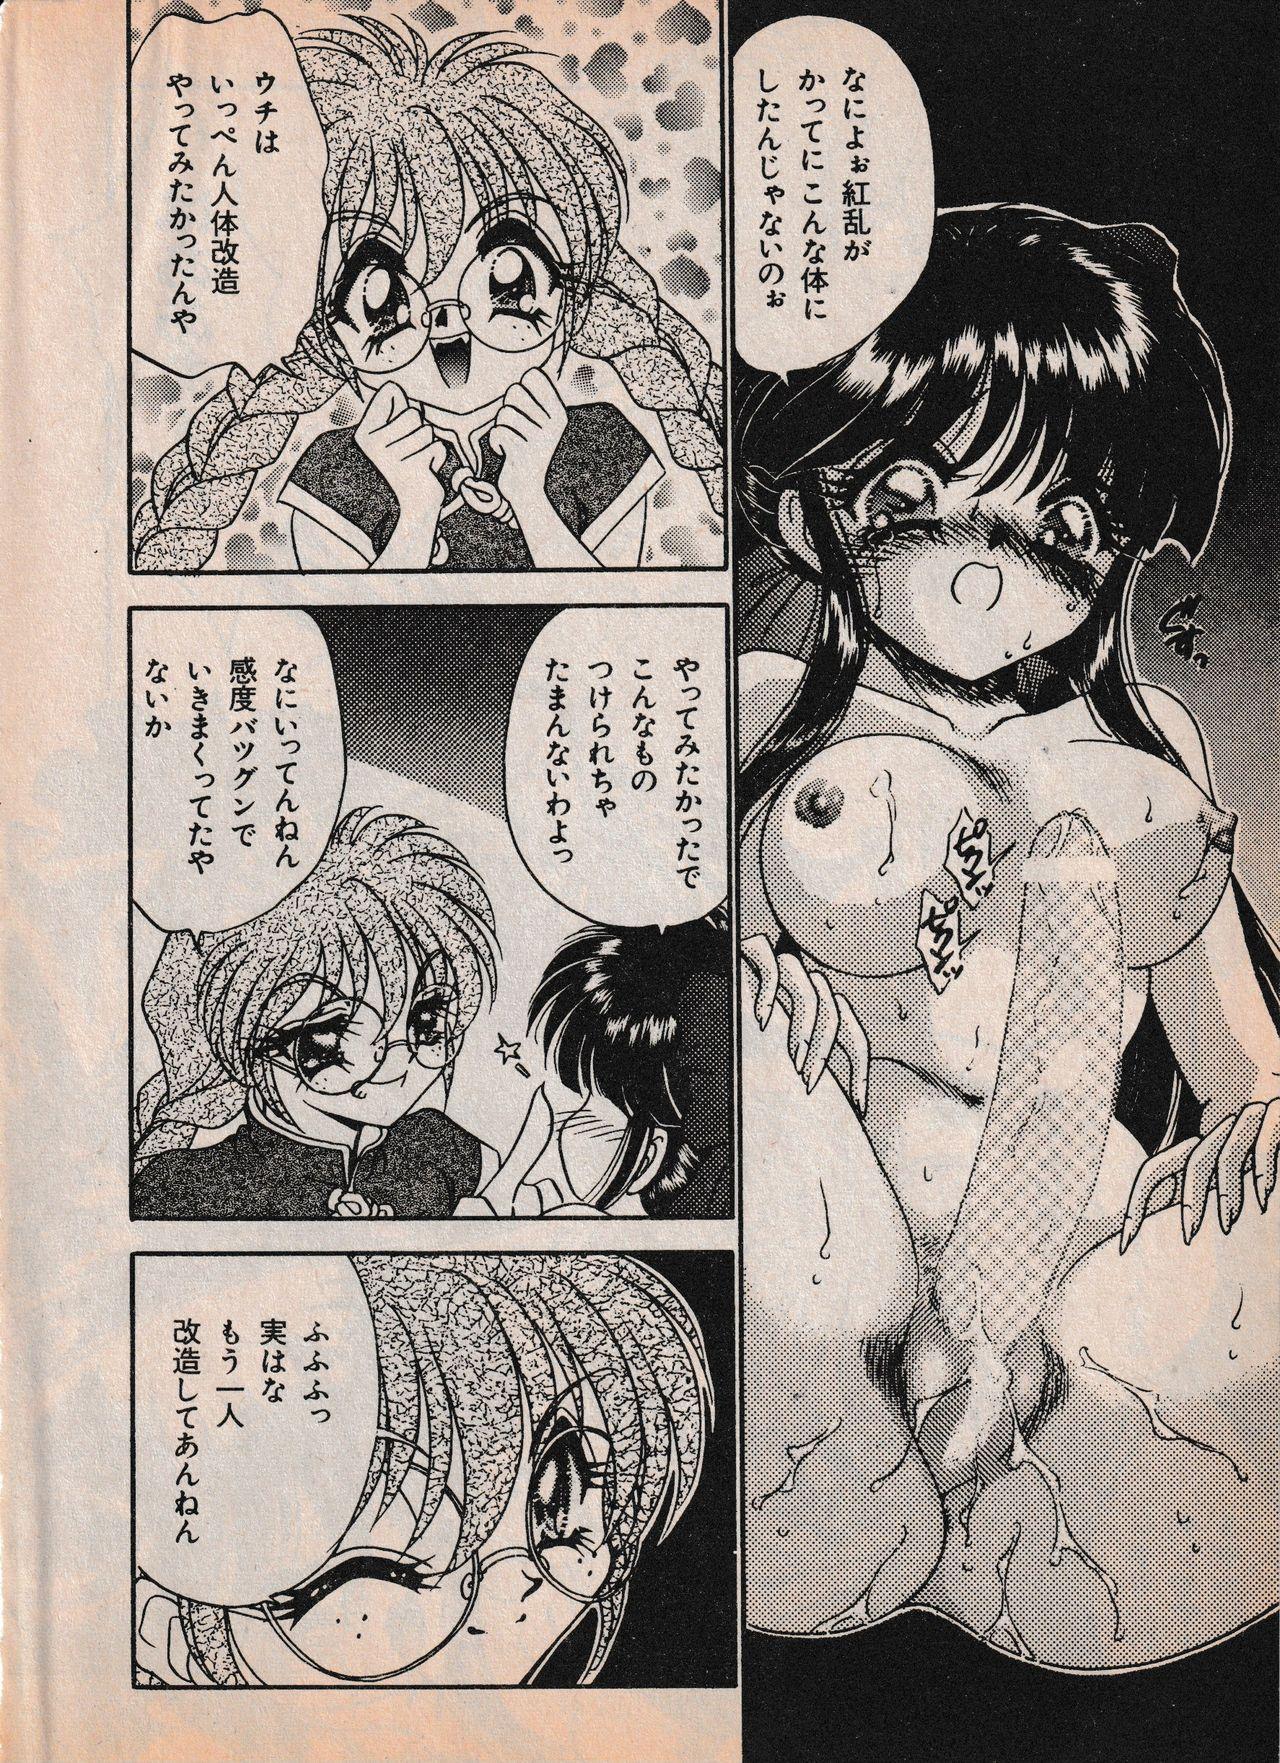 Sailor X vol. 4 - Sailor X vs. Cunty Horny! 4